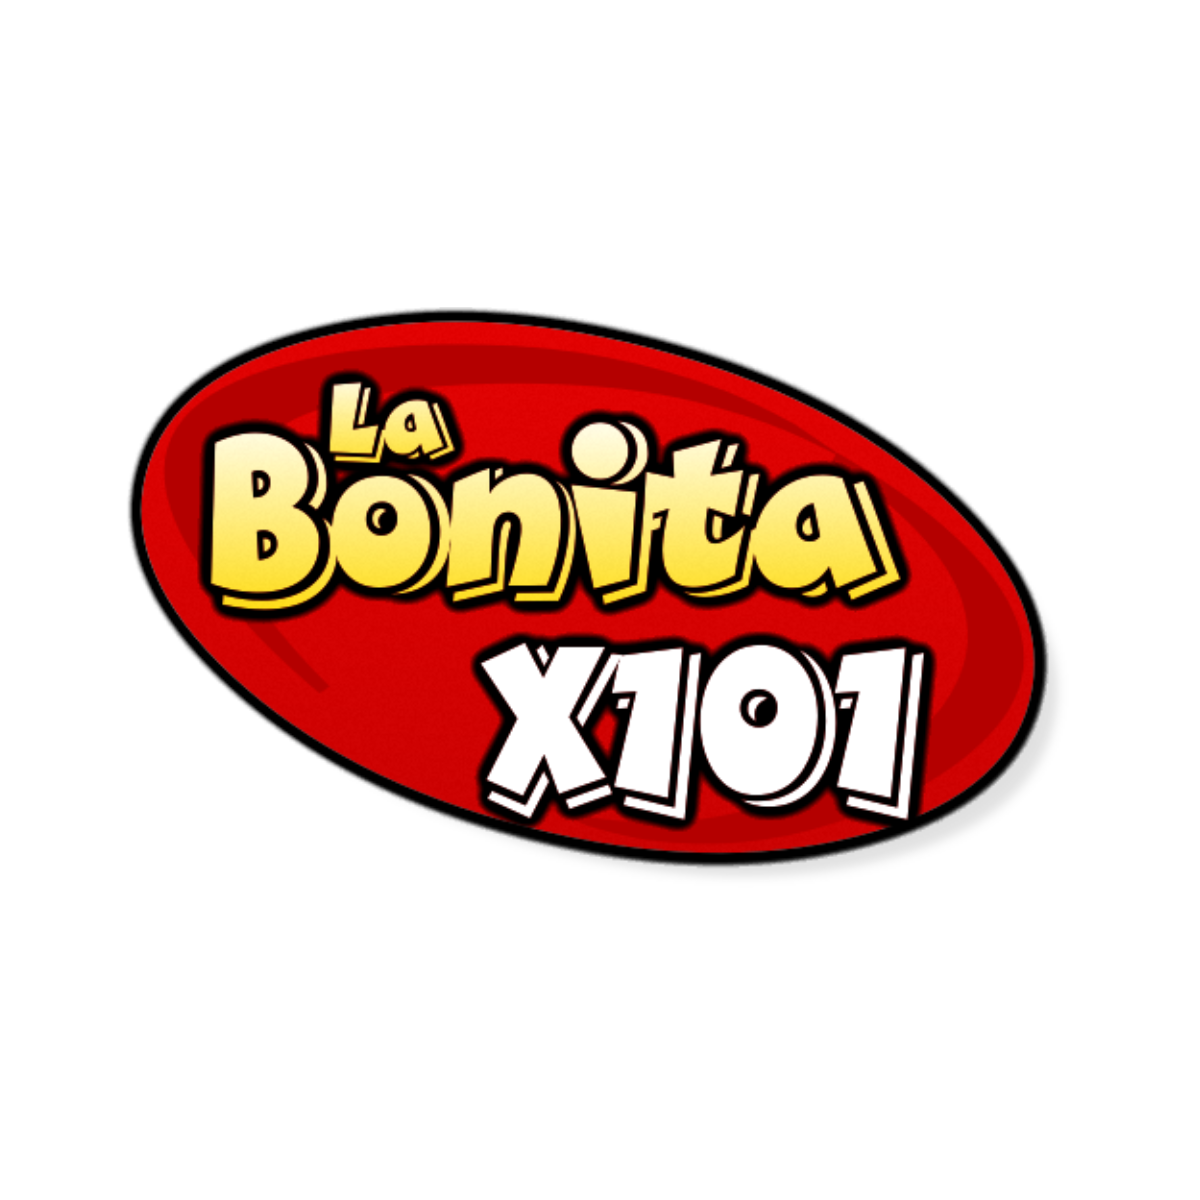 Listen to La Bonita X101 - Viejitas, Pero Recuerdos!